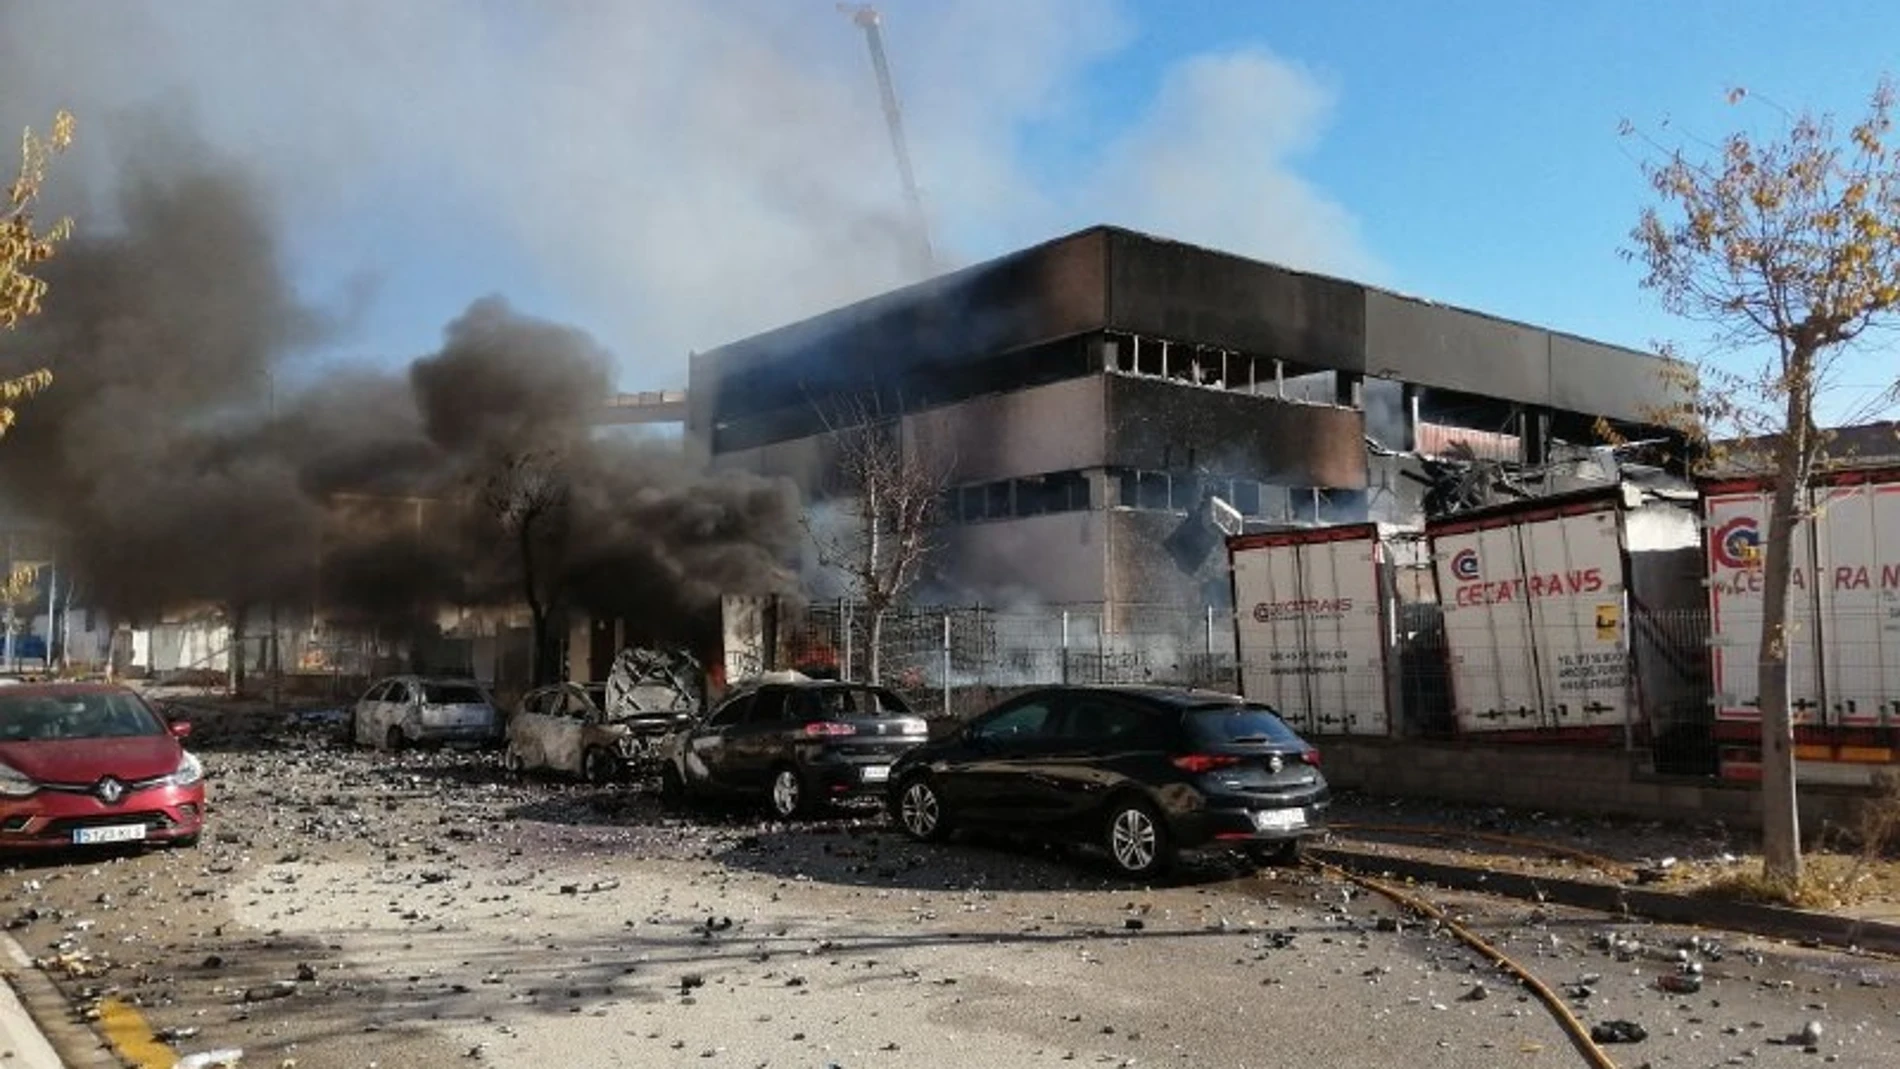 Imagen de la fábrica tras el incendio tomada por los Bomberos